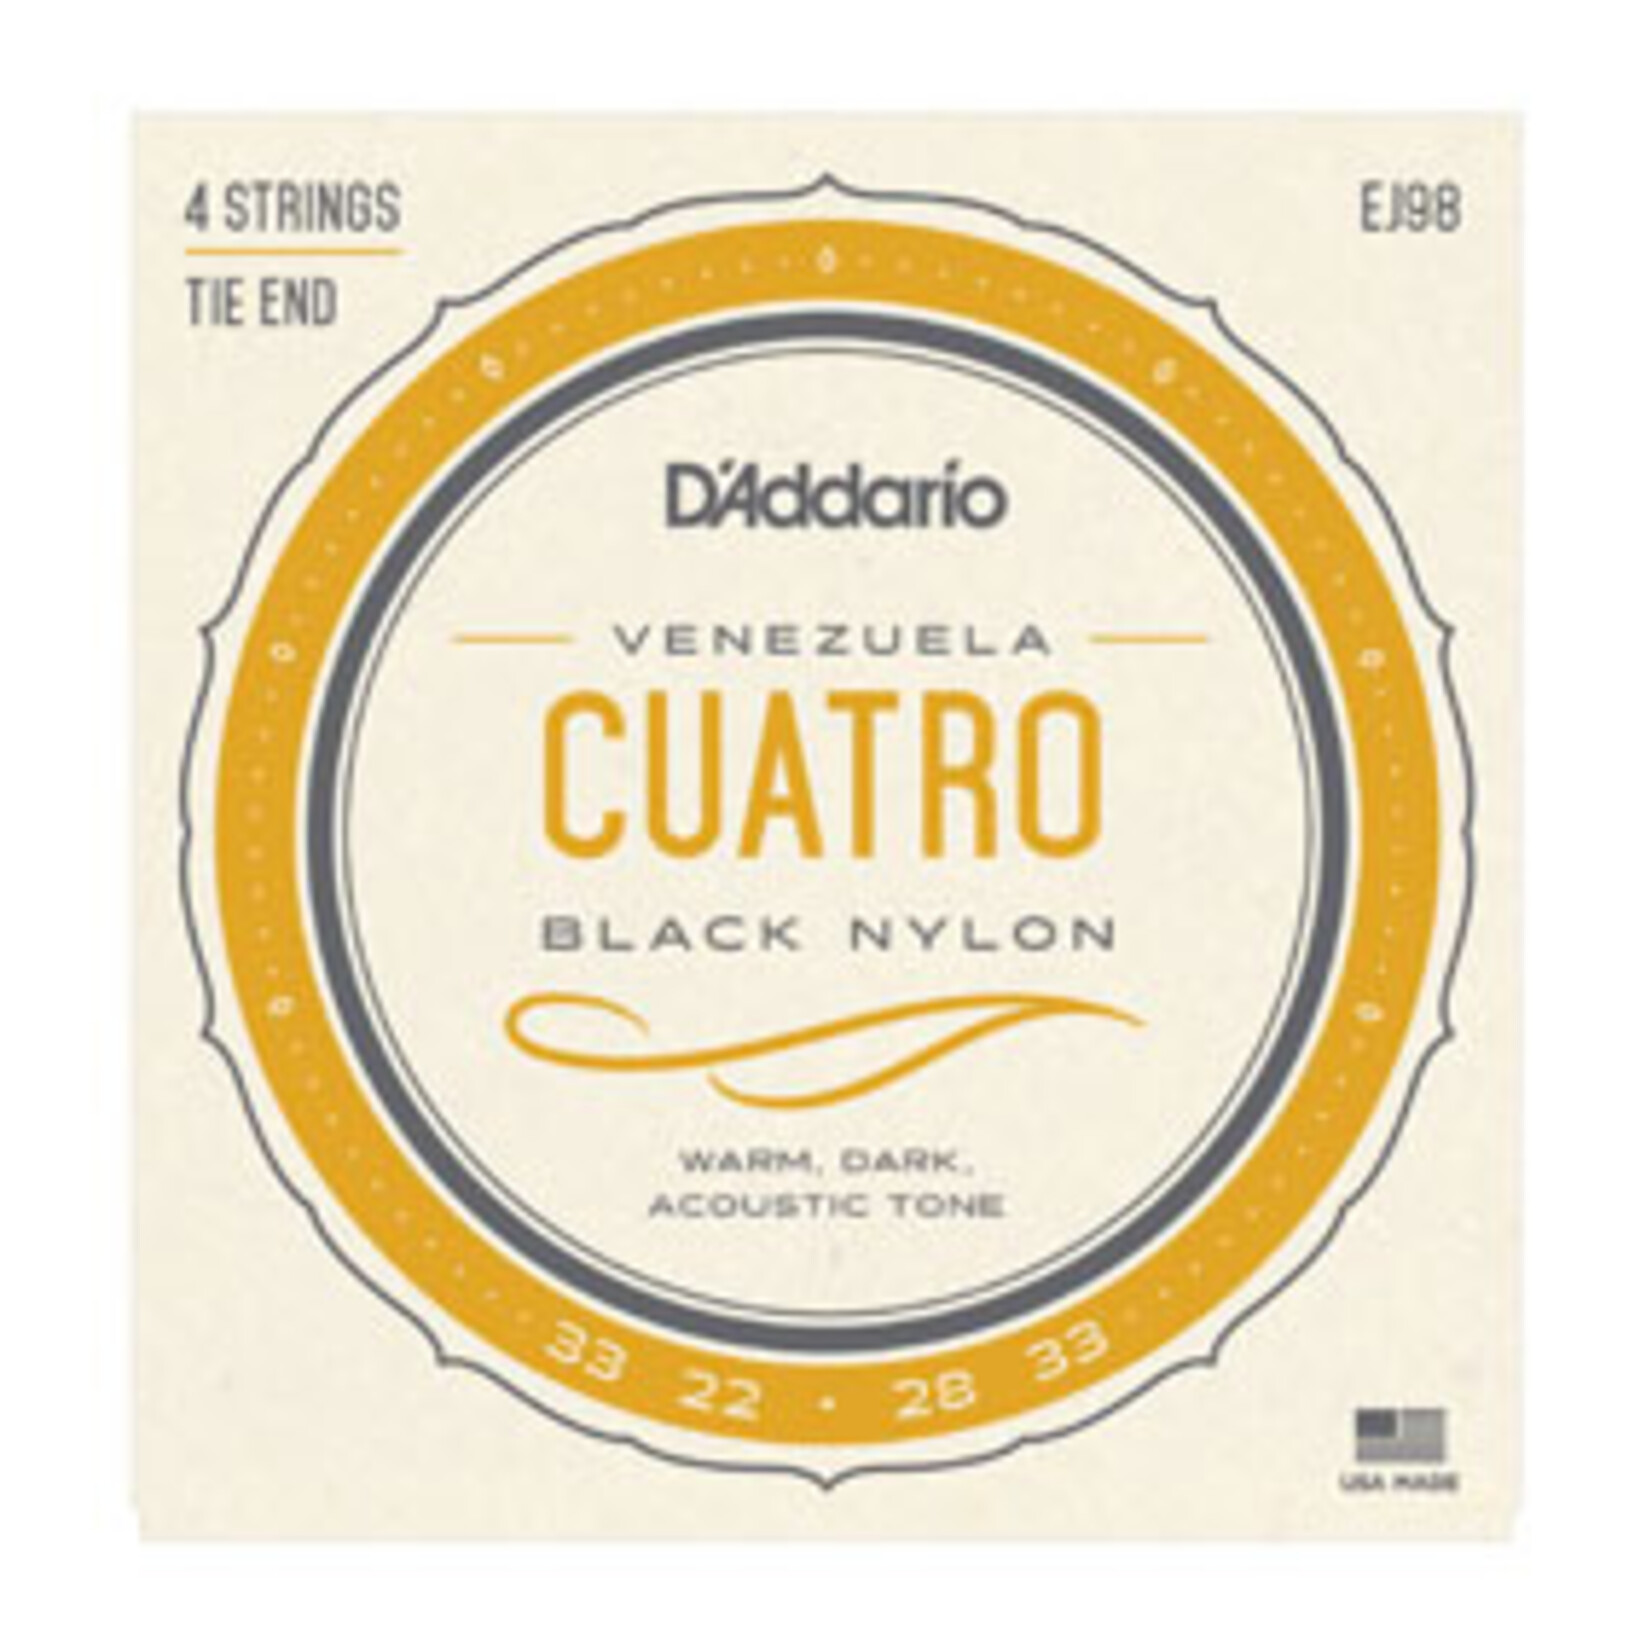 D'Addario D'Addario EJ98 Cuatro-Venezuela Strings